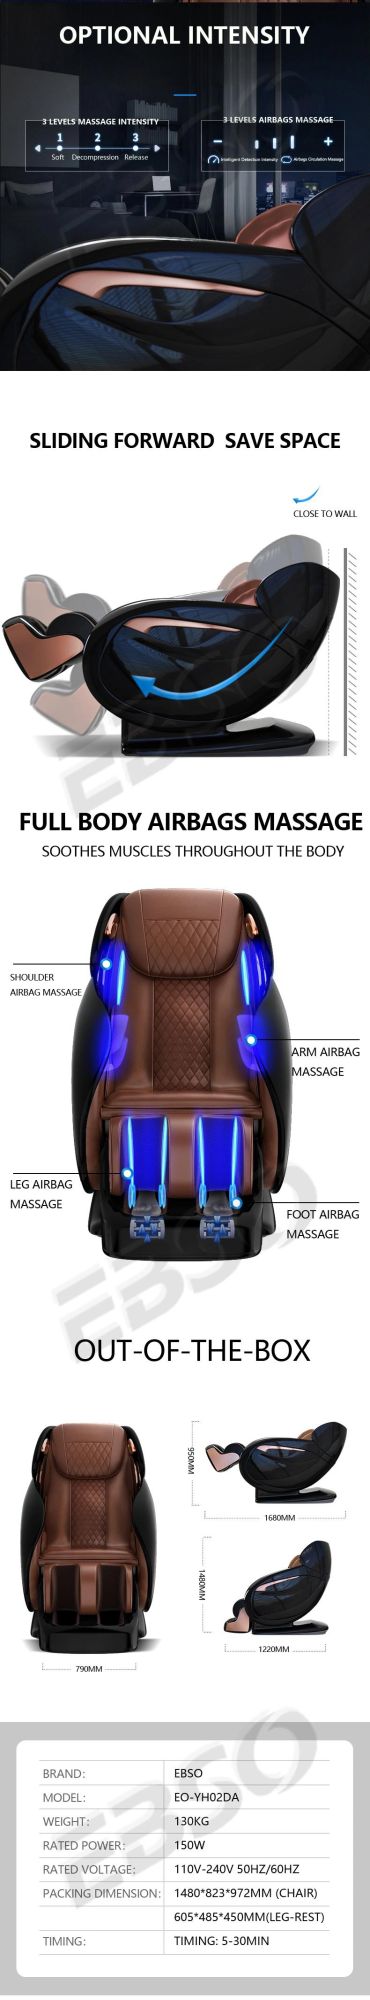 Large Double SL 4D Massage Chair 2021 Zero Gravity